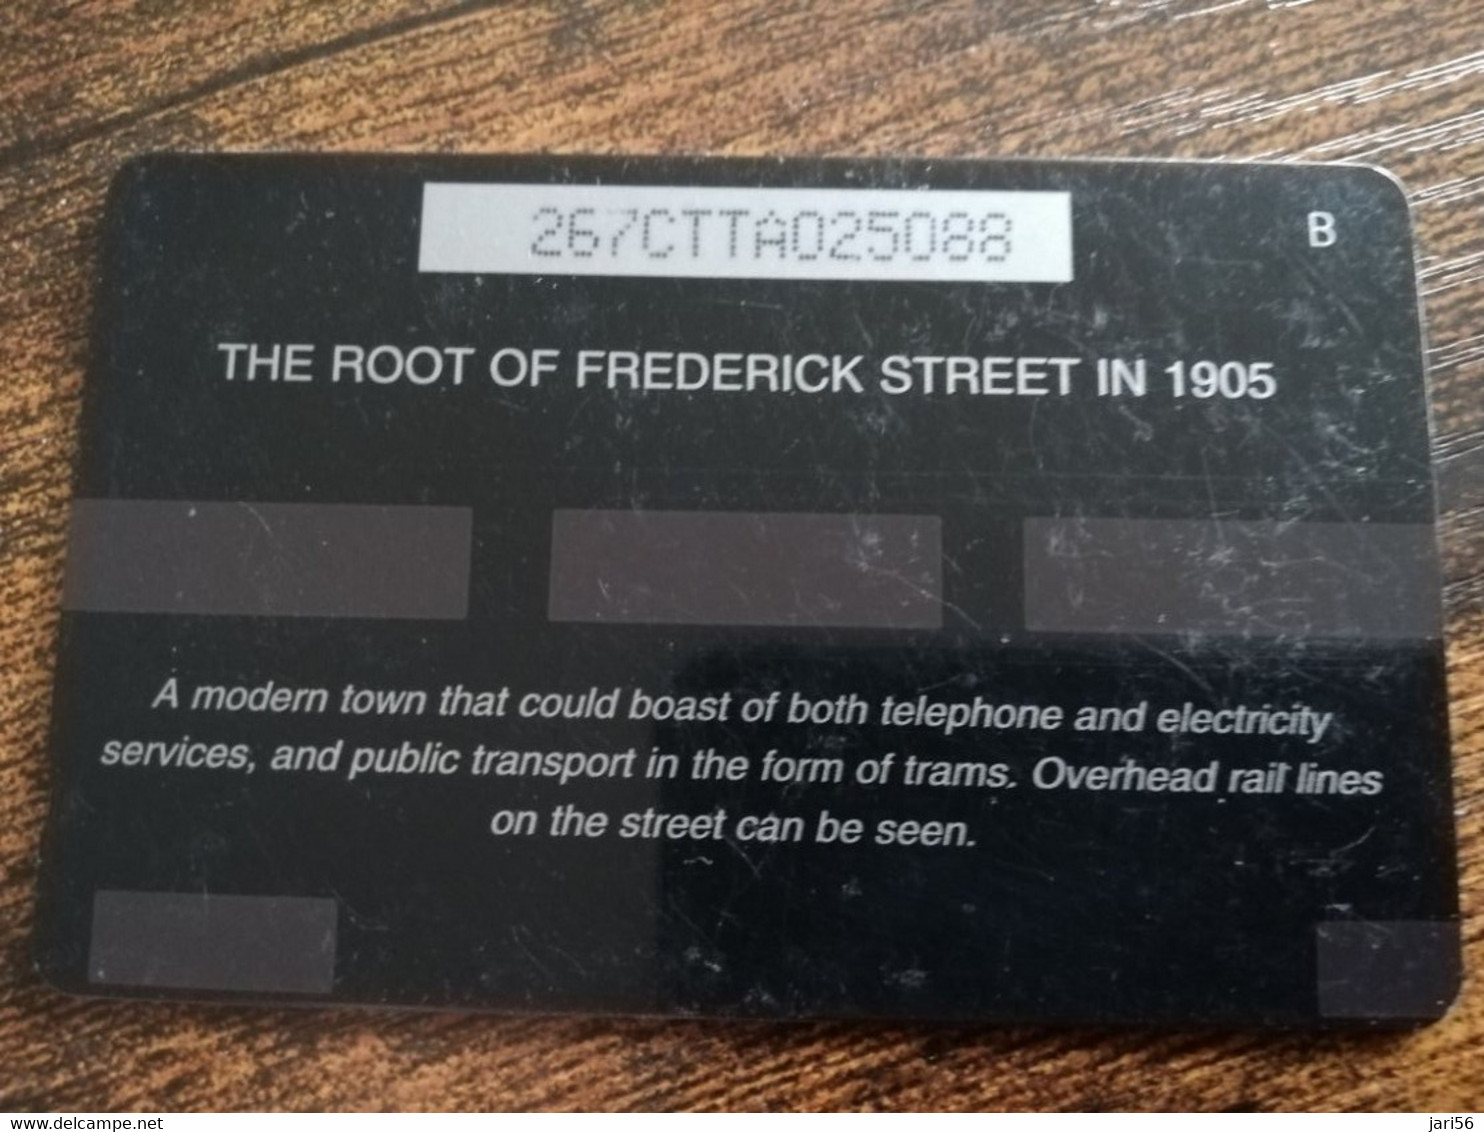 TRINIDAD & TOBAGO  GPT CARD    $20,-  267CCTA    THE ROOT OF FREDERICK STREET            Fine Used Card        ** 8911** - Trinidad En Tobago